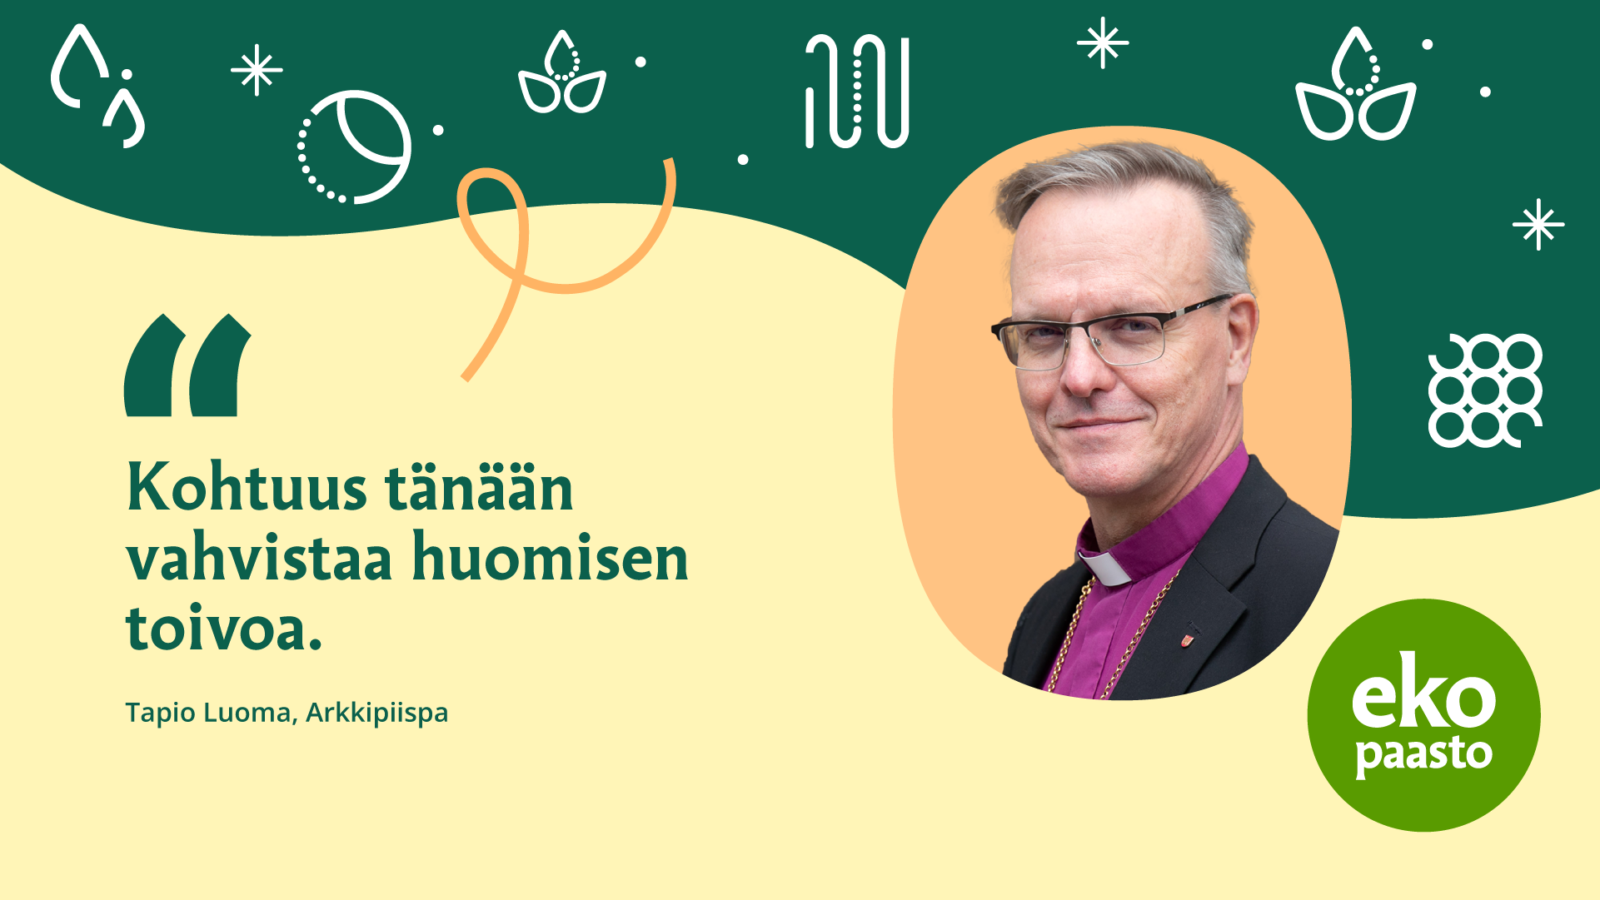 Arkkipiispa Tapio Luoman kuva ja hänen toivon sitaattinsa: "Kohtuus tänään vahvistaa huomisen toivoa."